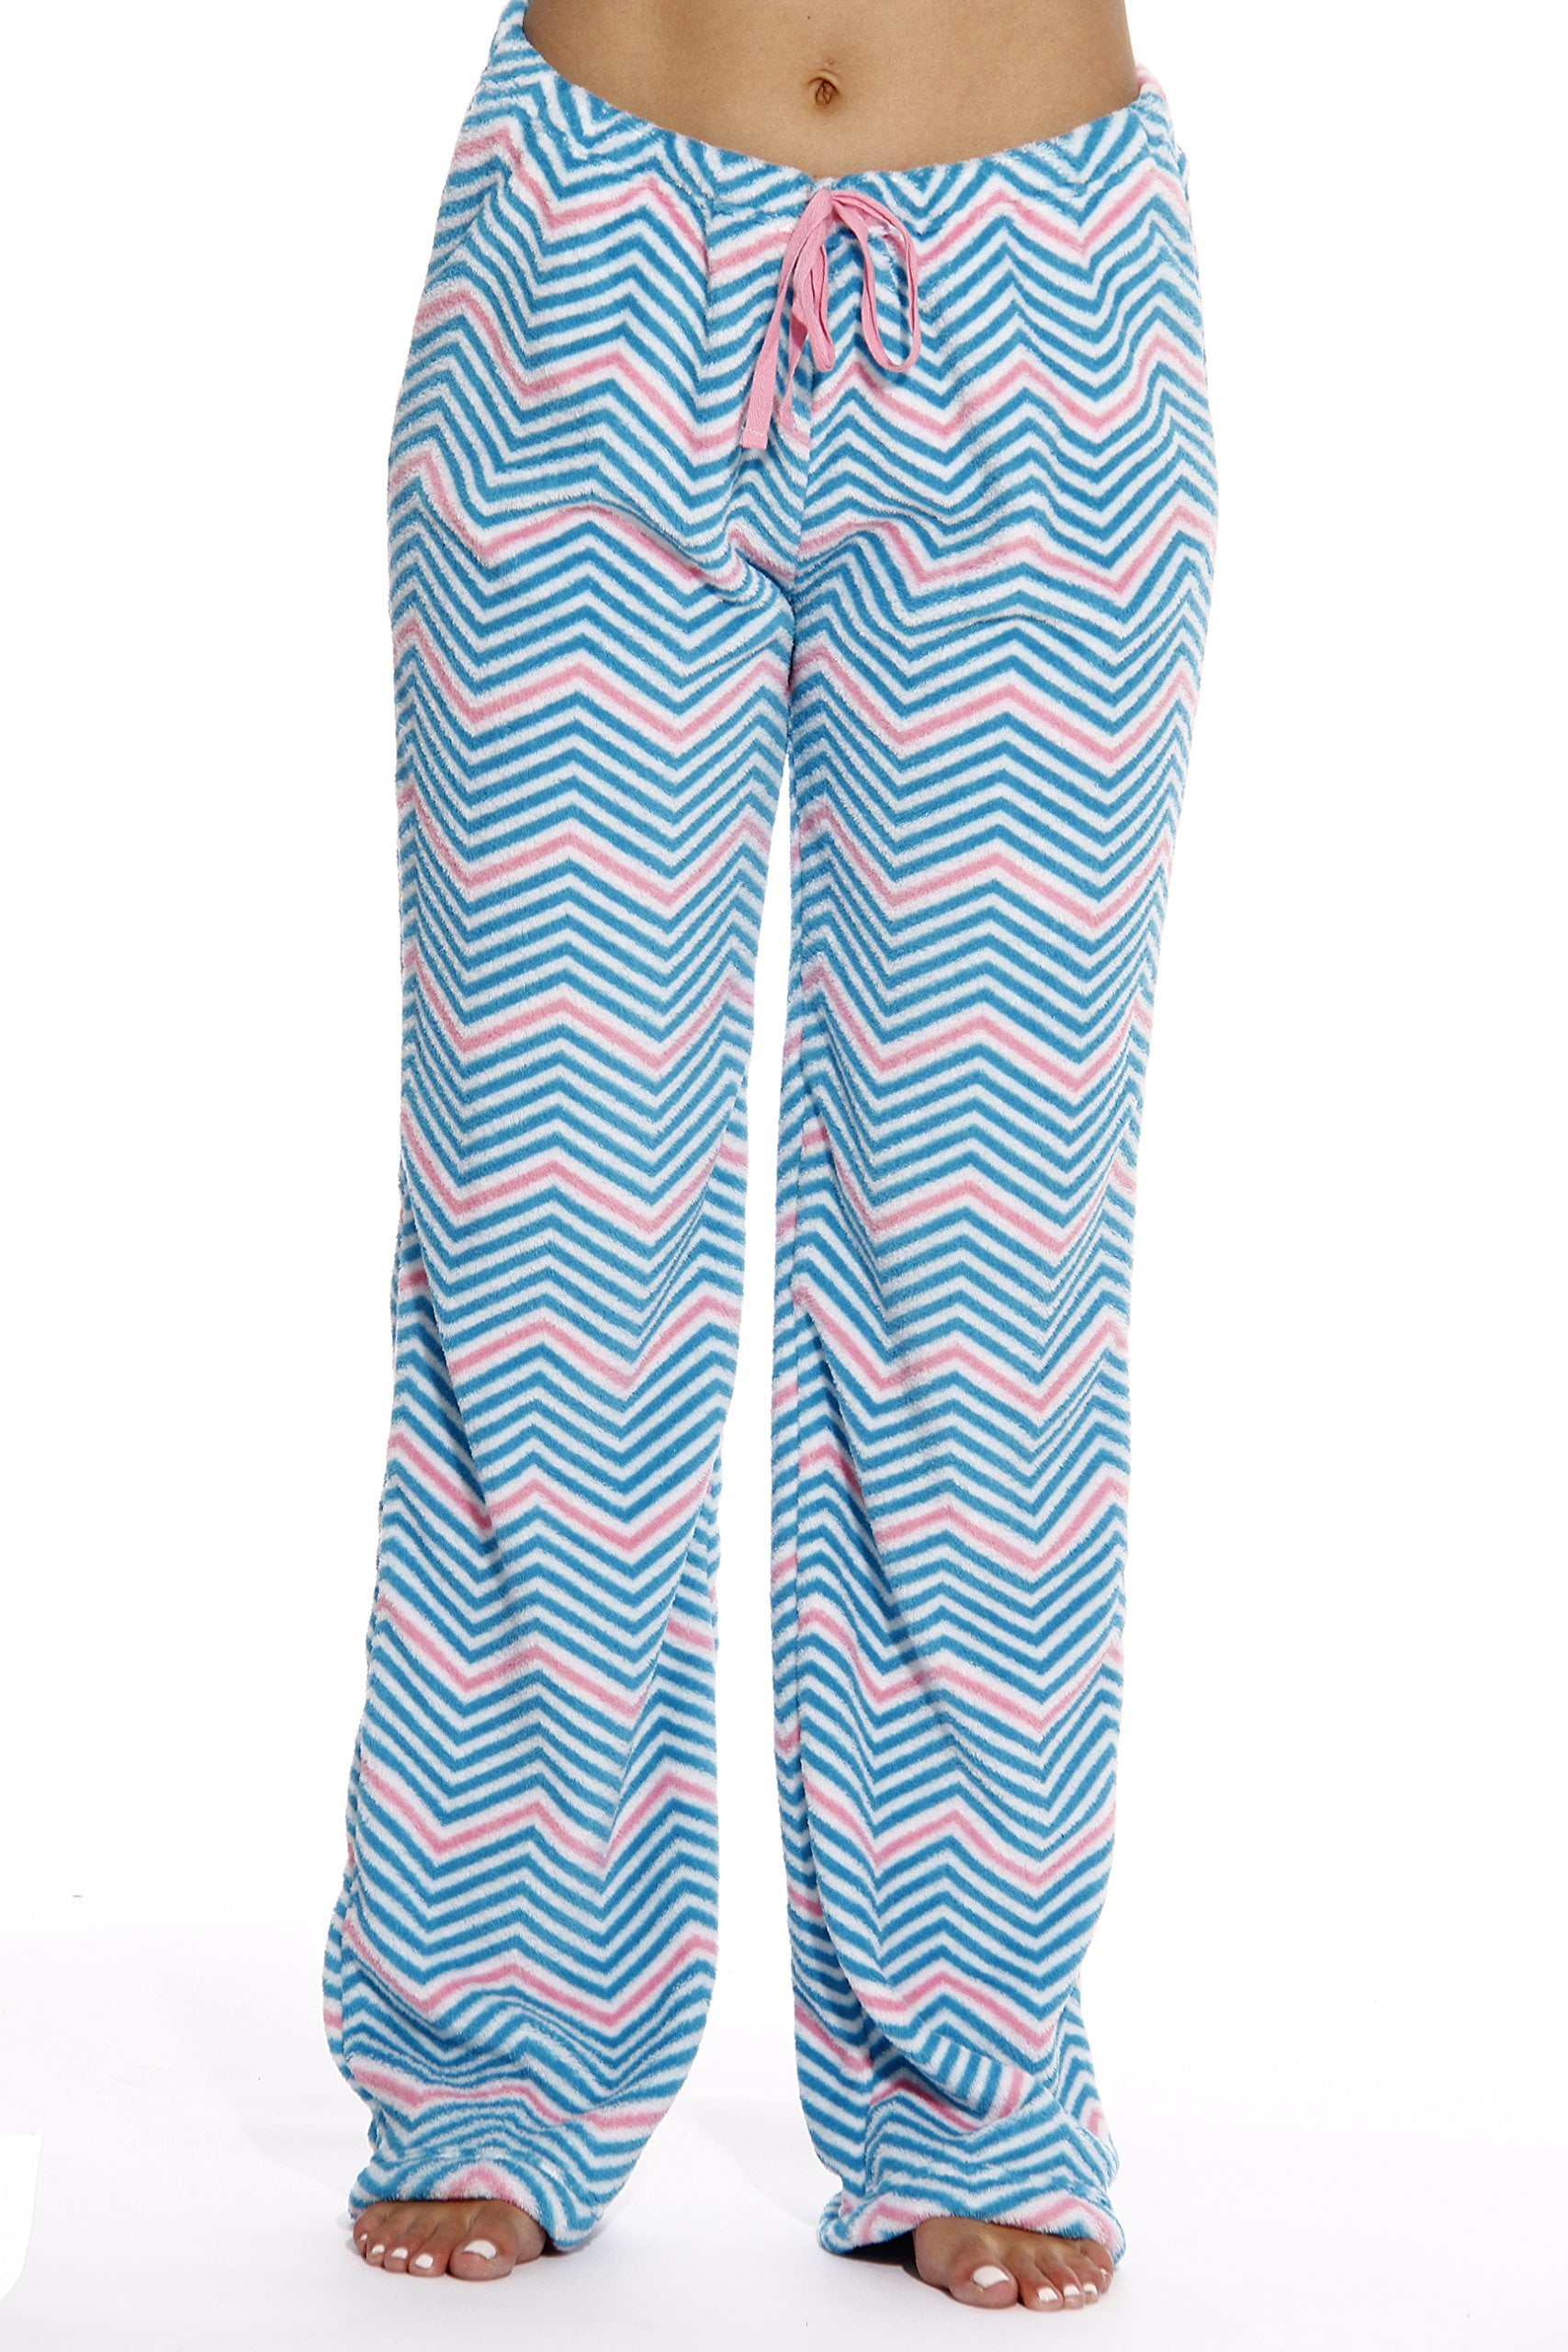 Just Love Womens Plush Pajama Pants Petite to Plus Size Pajamas